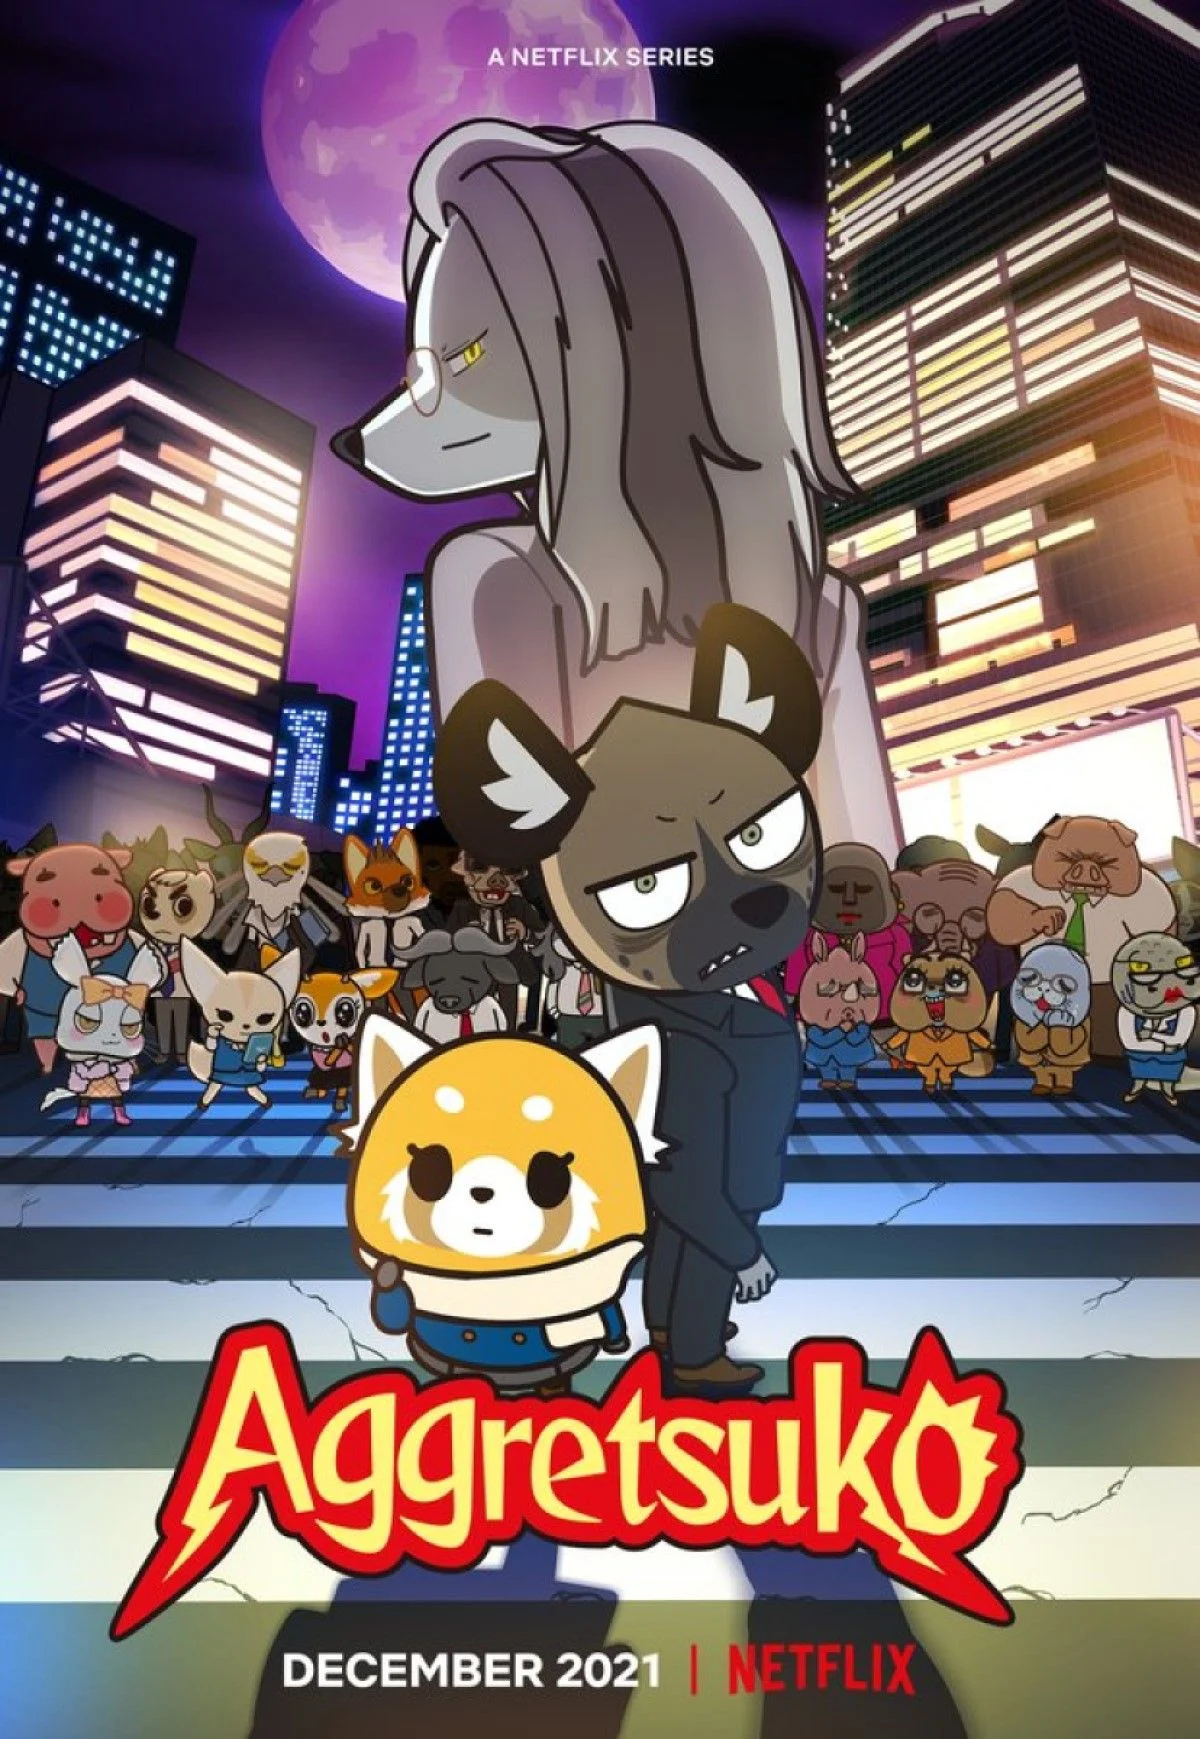 Is Aggretsuko Season 4 on Netflix